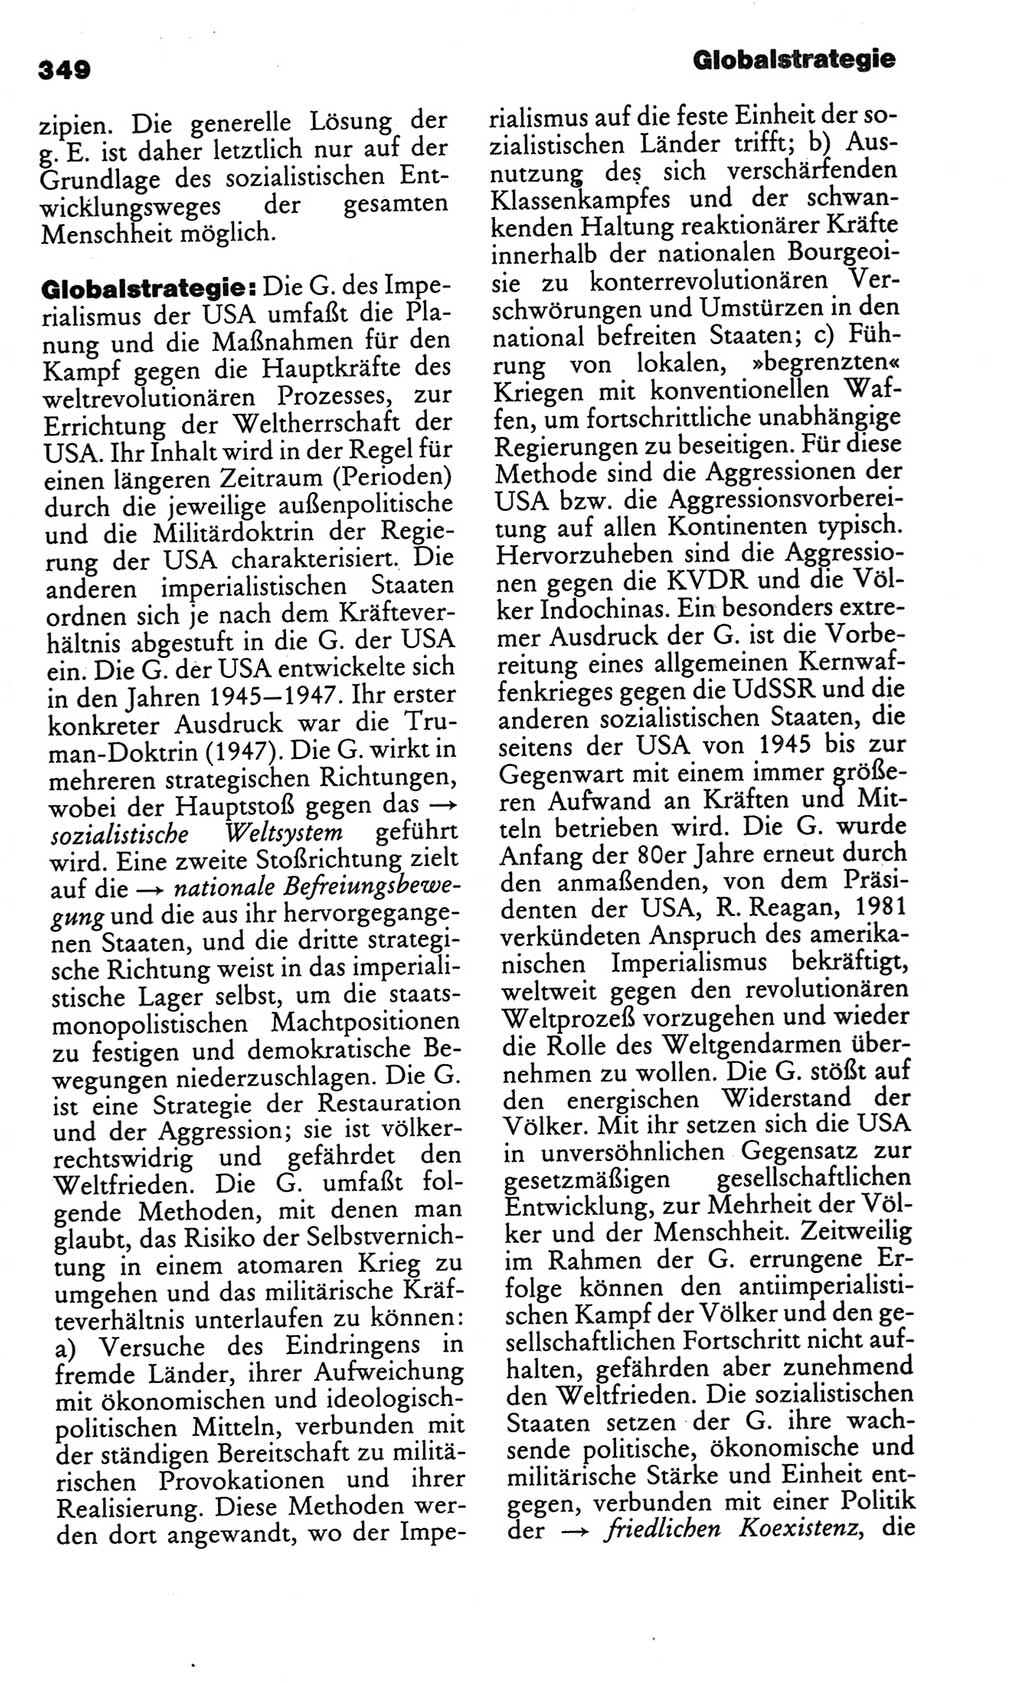 Kleines politisches Wörterbuch [Deutsche Demokratische Republik (DDR)] 1986, Seite 349 (Kl. pol. Wb. DDR 1986, S. 349)